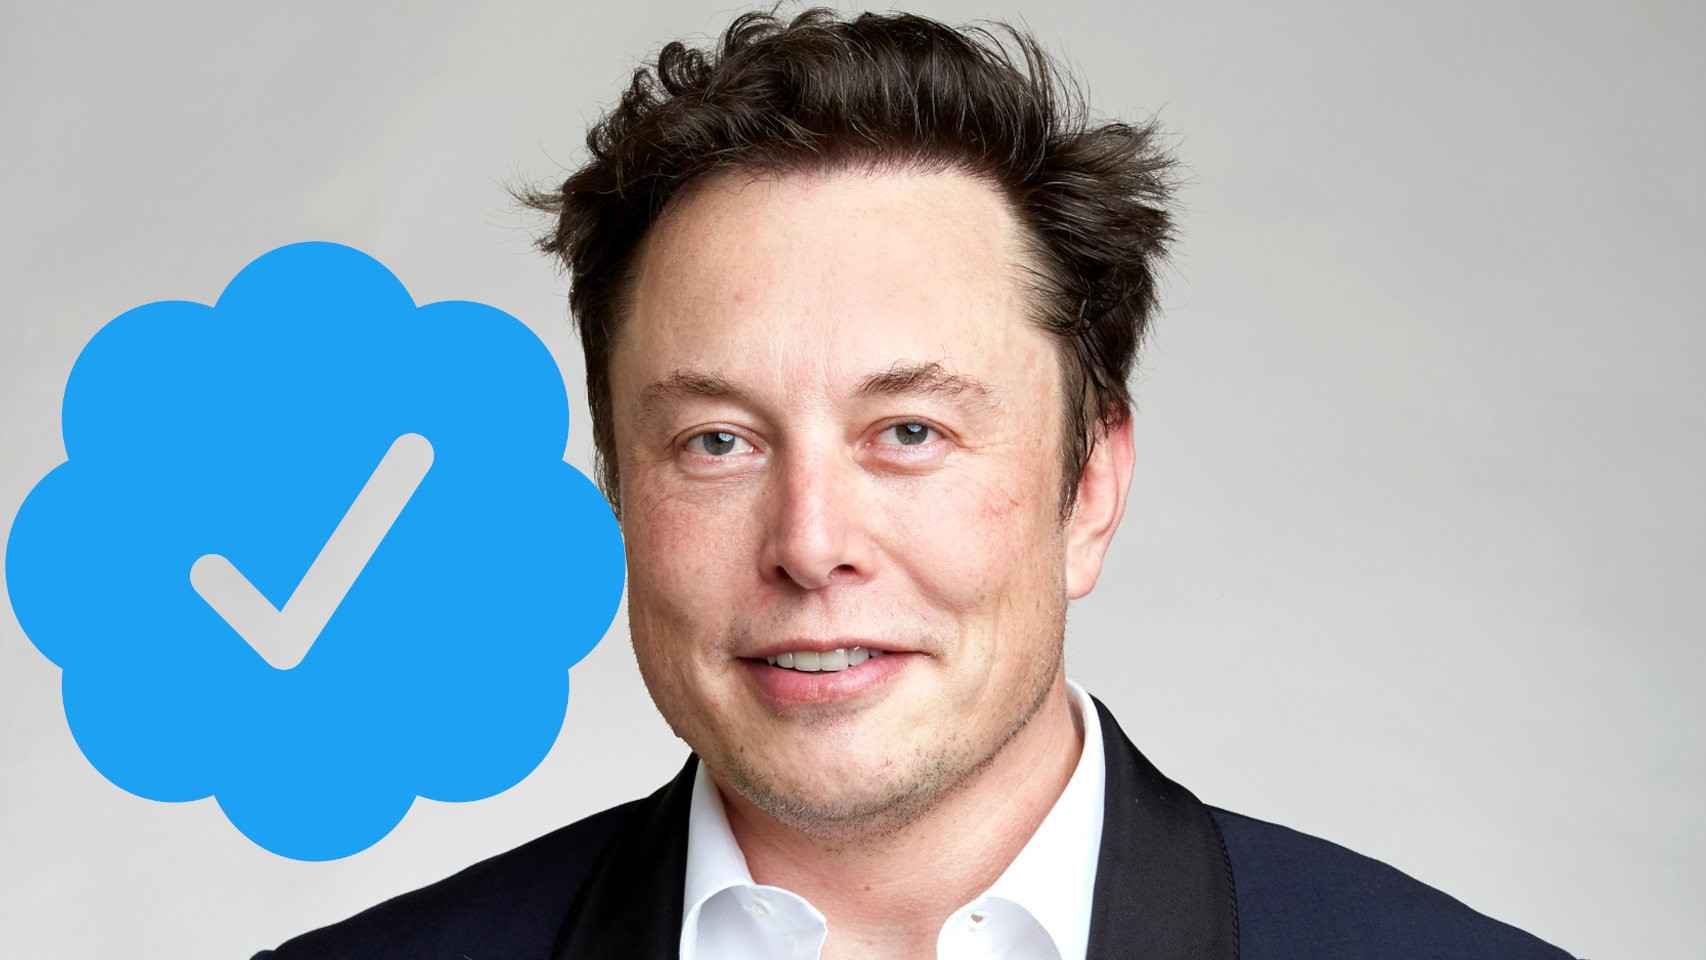 La verificación es otra manera de monetizar Twitter, según Musk